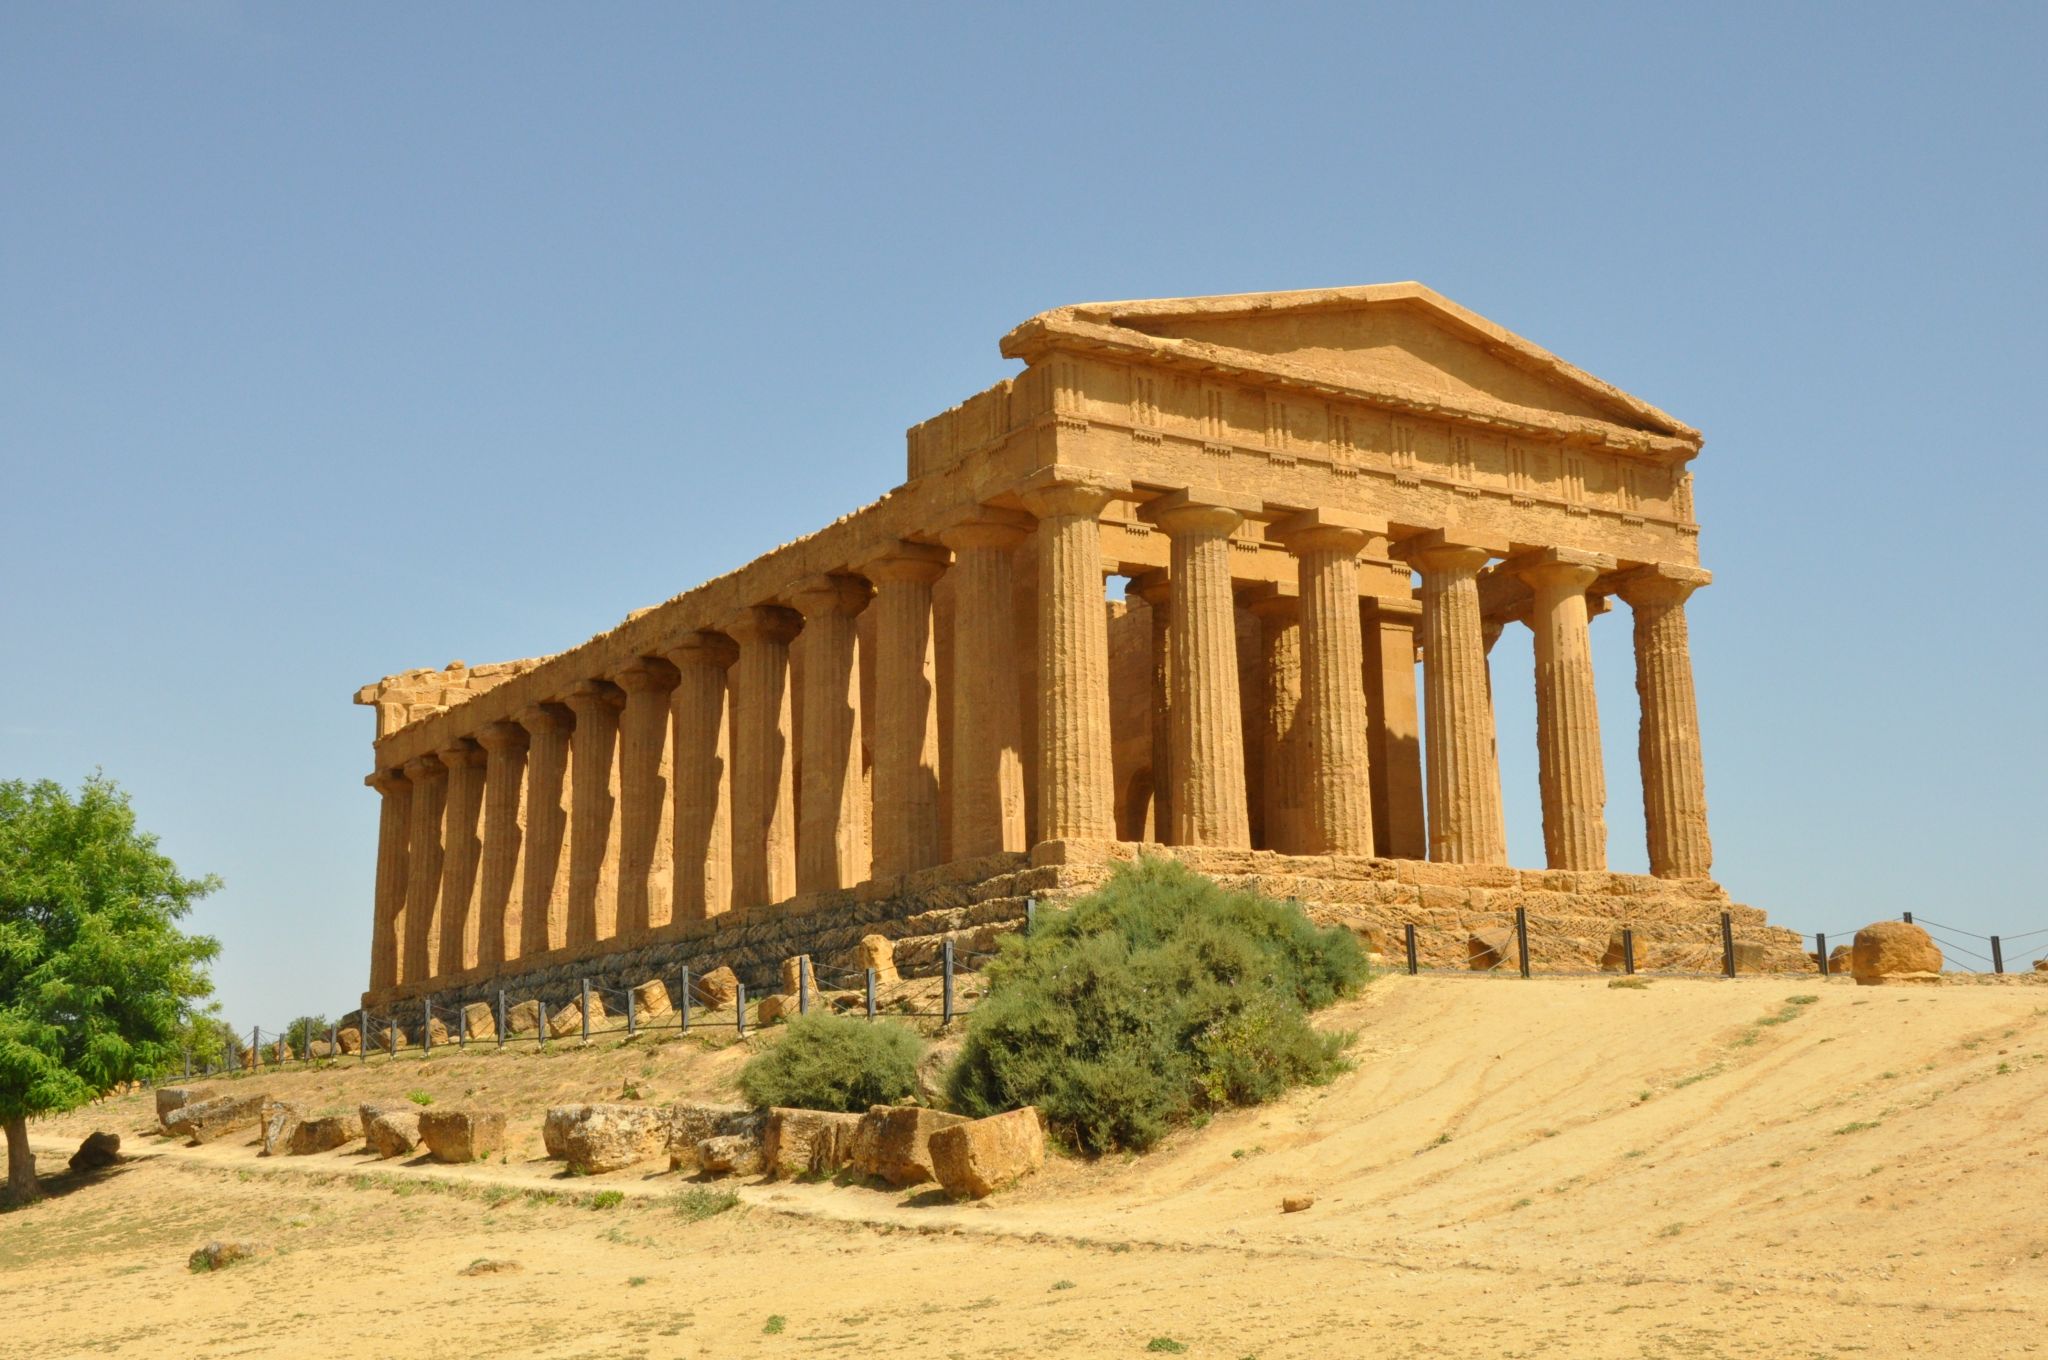 un péristyle (temple grec, IVe siècle avant J.-C.)